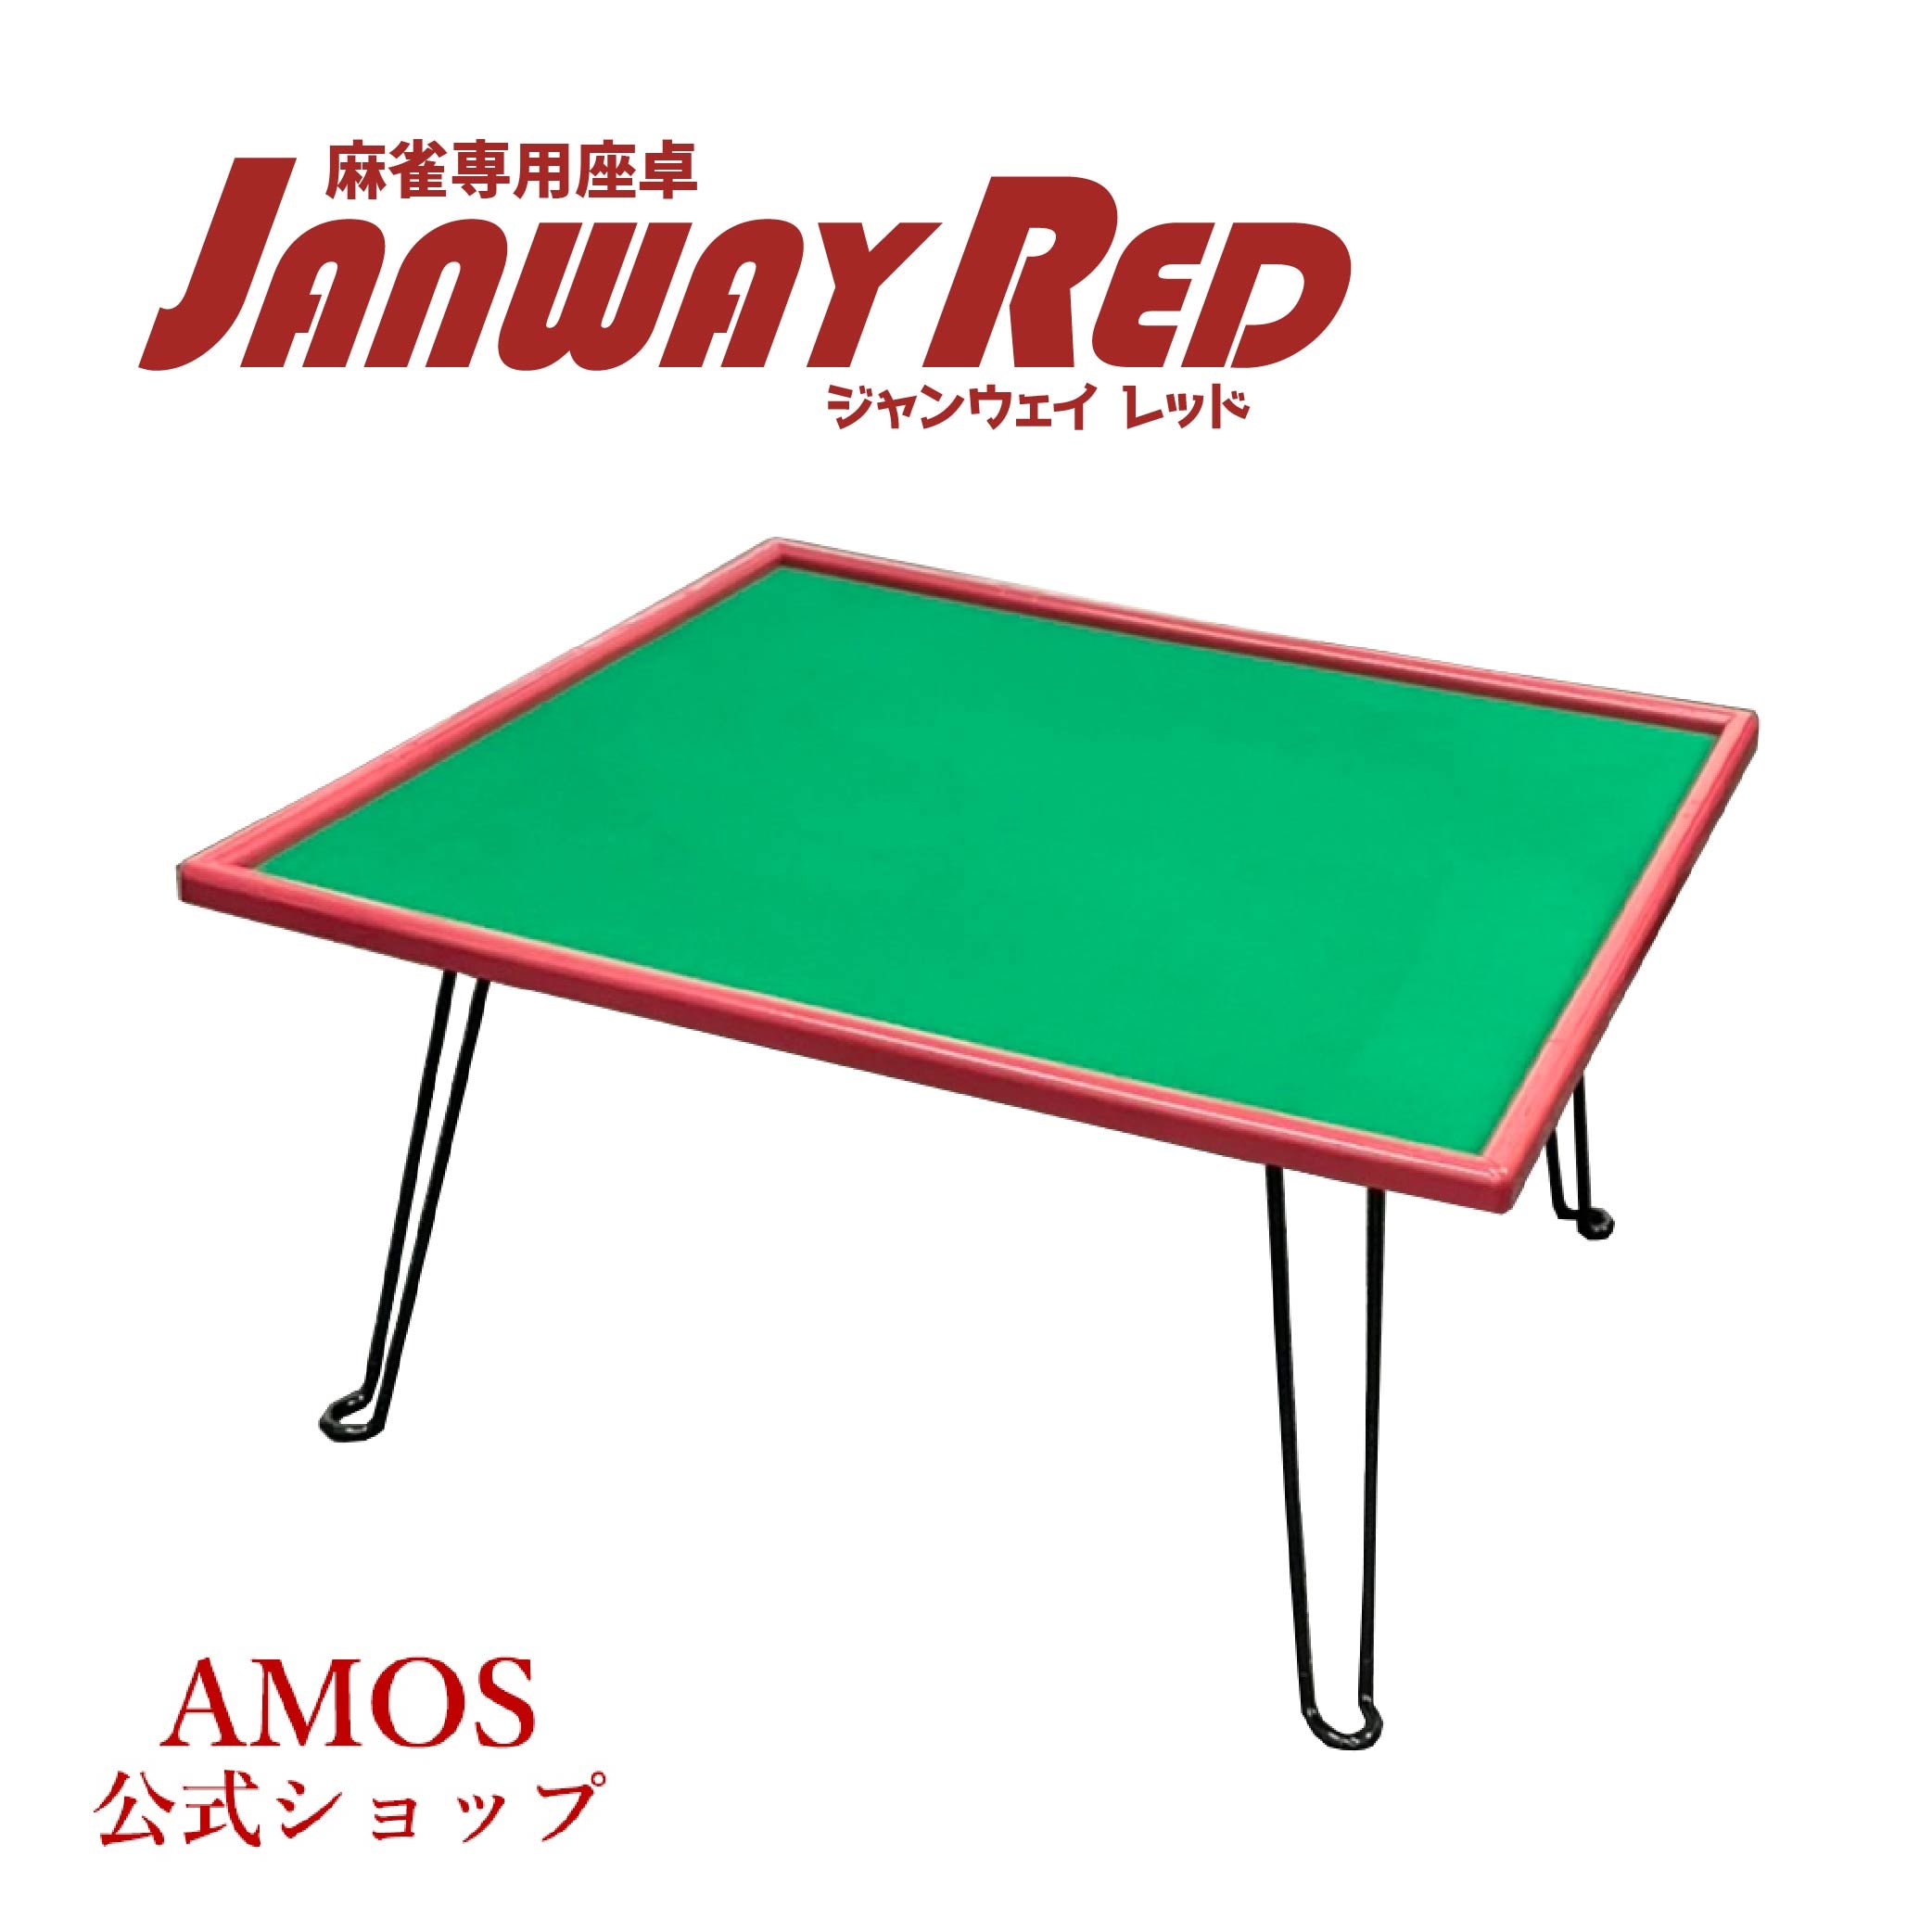 手打麻雀卓 JANWAY　RED(ジャンウェイ レッド) 座卓 軽量 折りたたみタイプ-AMOS公式ショップ